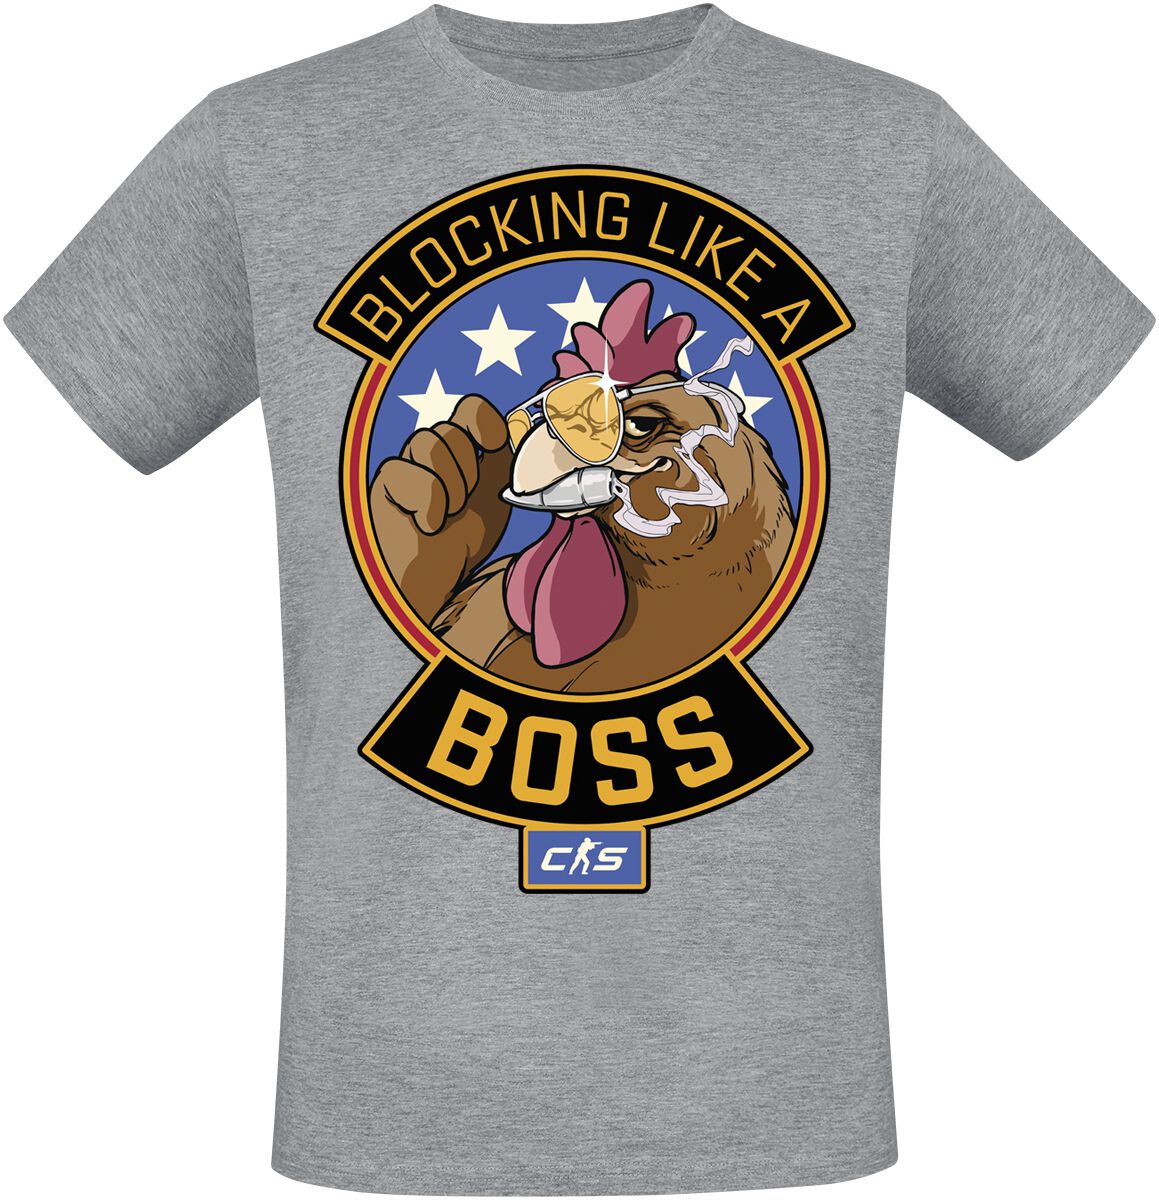 Counter-Strike - Gaming T-Shirt - 2 - Blocking Like A Boss - S bis XXL - für Männer - Größe XXL - grau meliert  - EMP exklusives Merchandise!